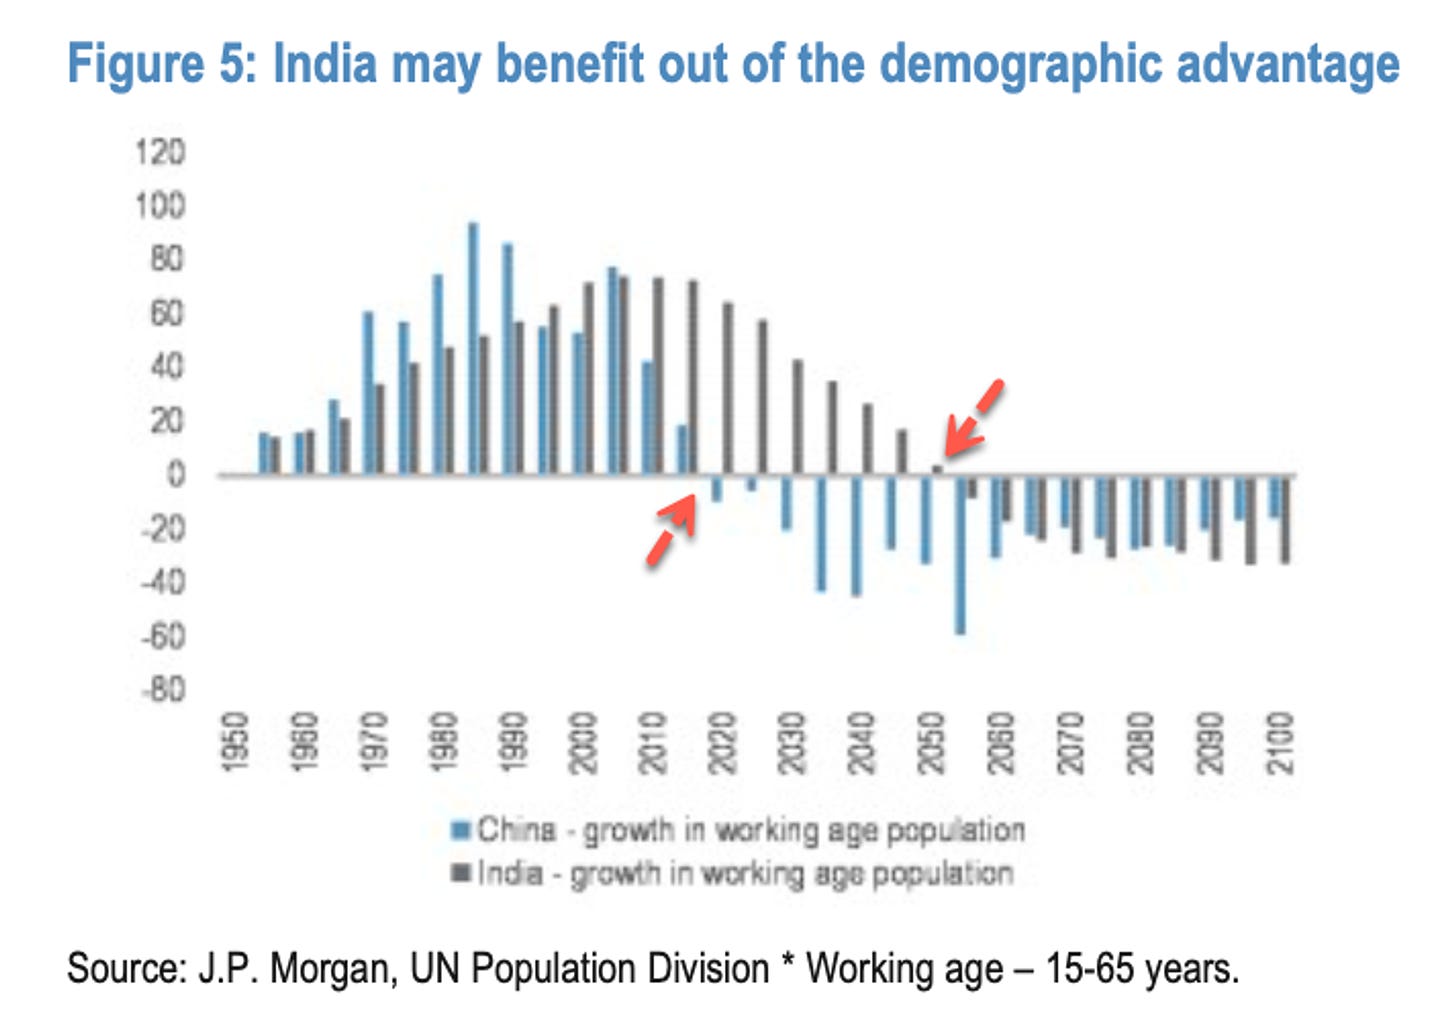 L'inde détient l'avantage démographique